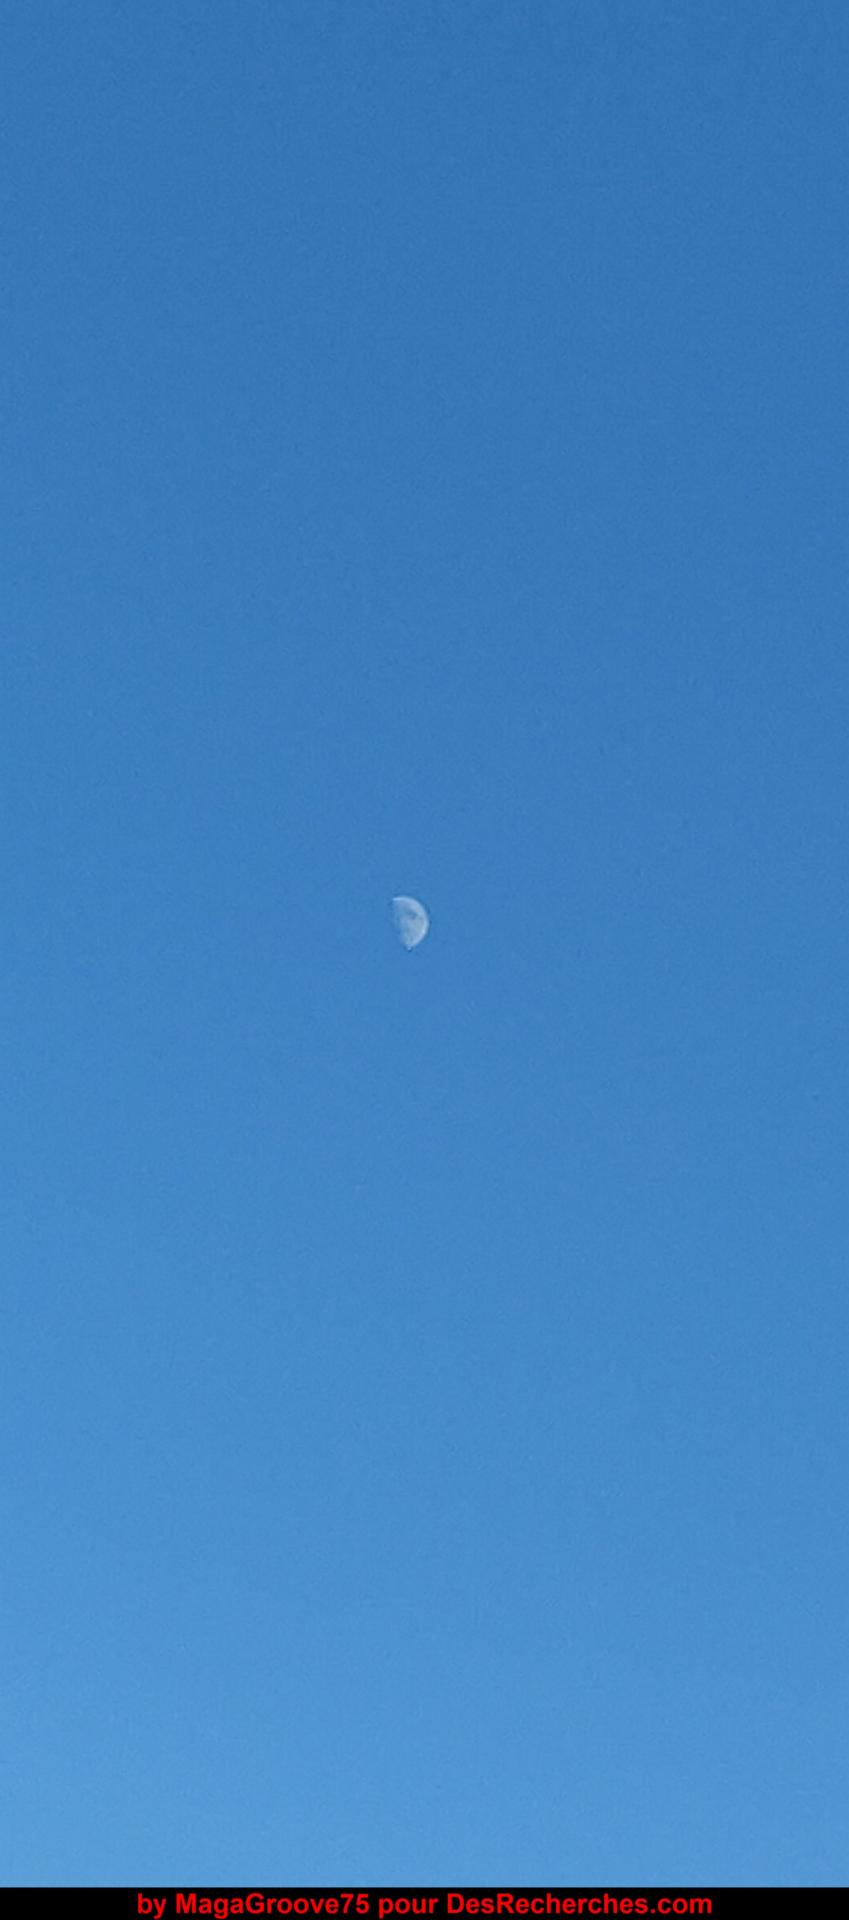 Lune visible le 07/2021 (Par MagaGroove75 pour DesRecherches.com)